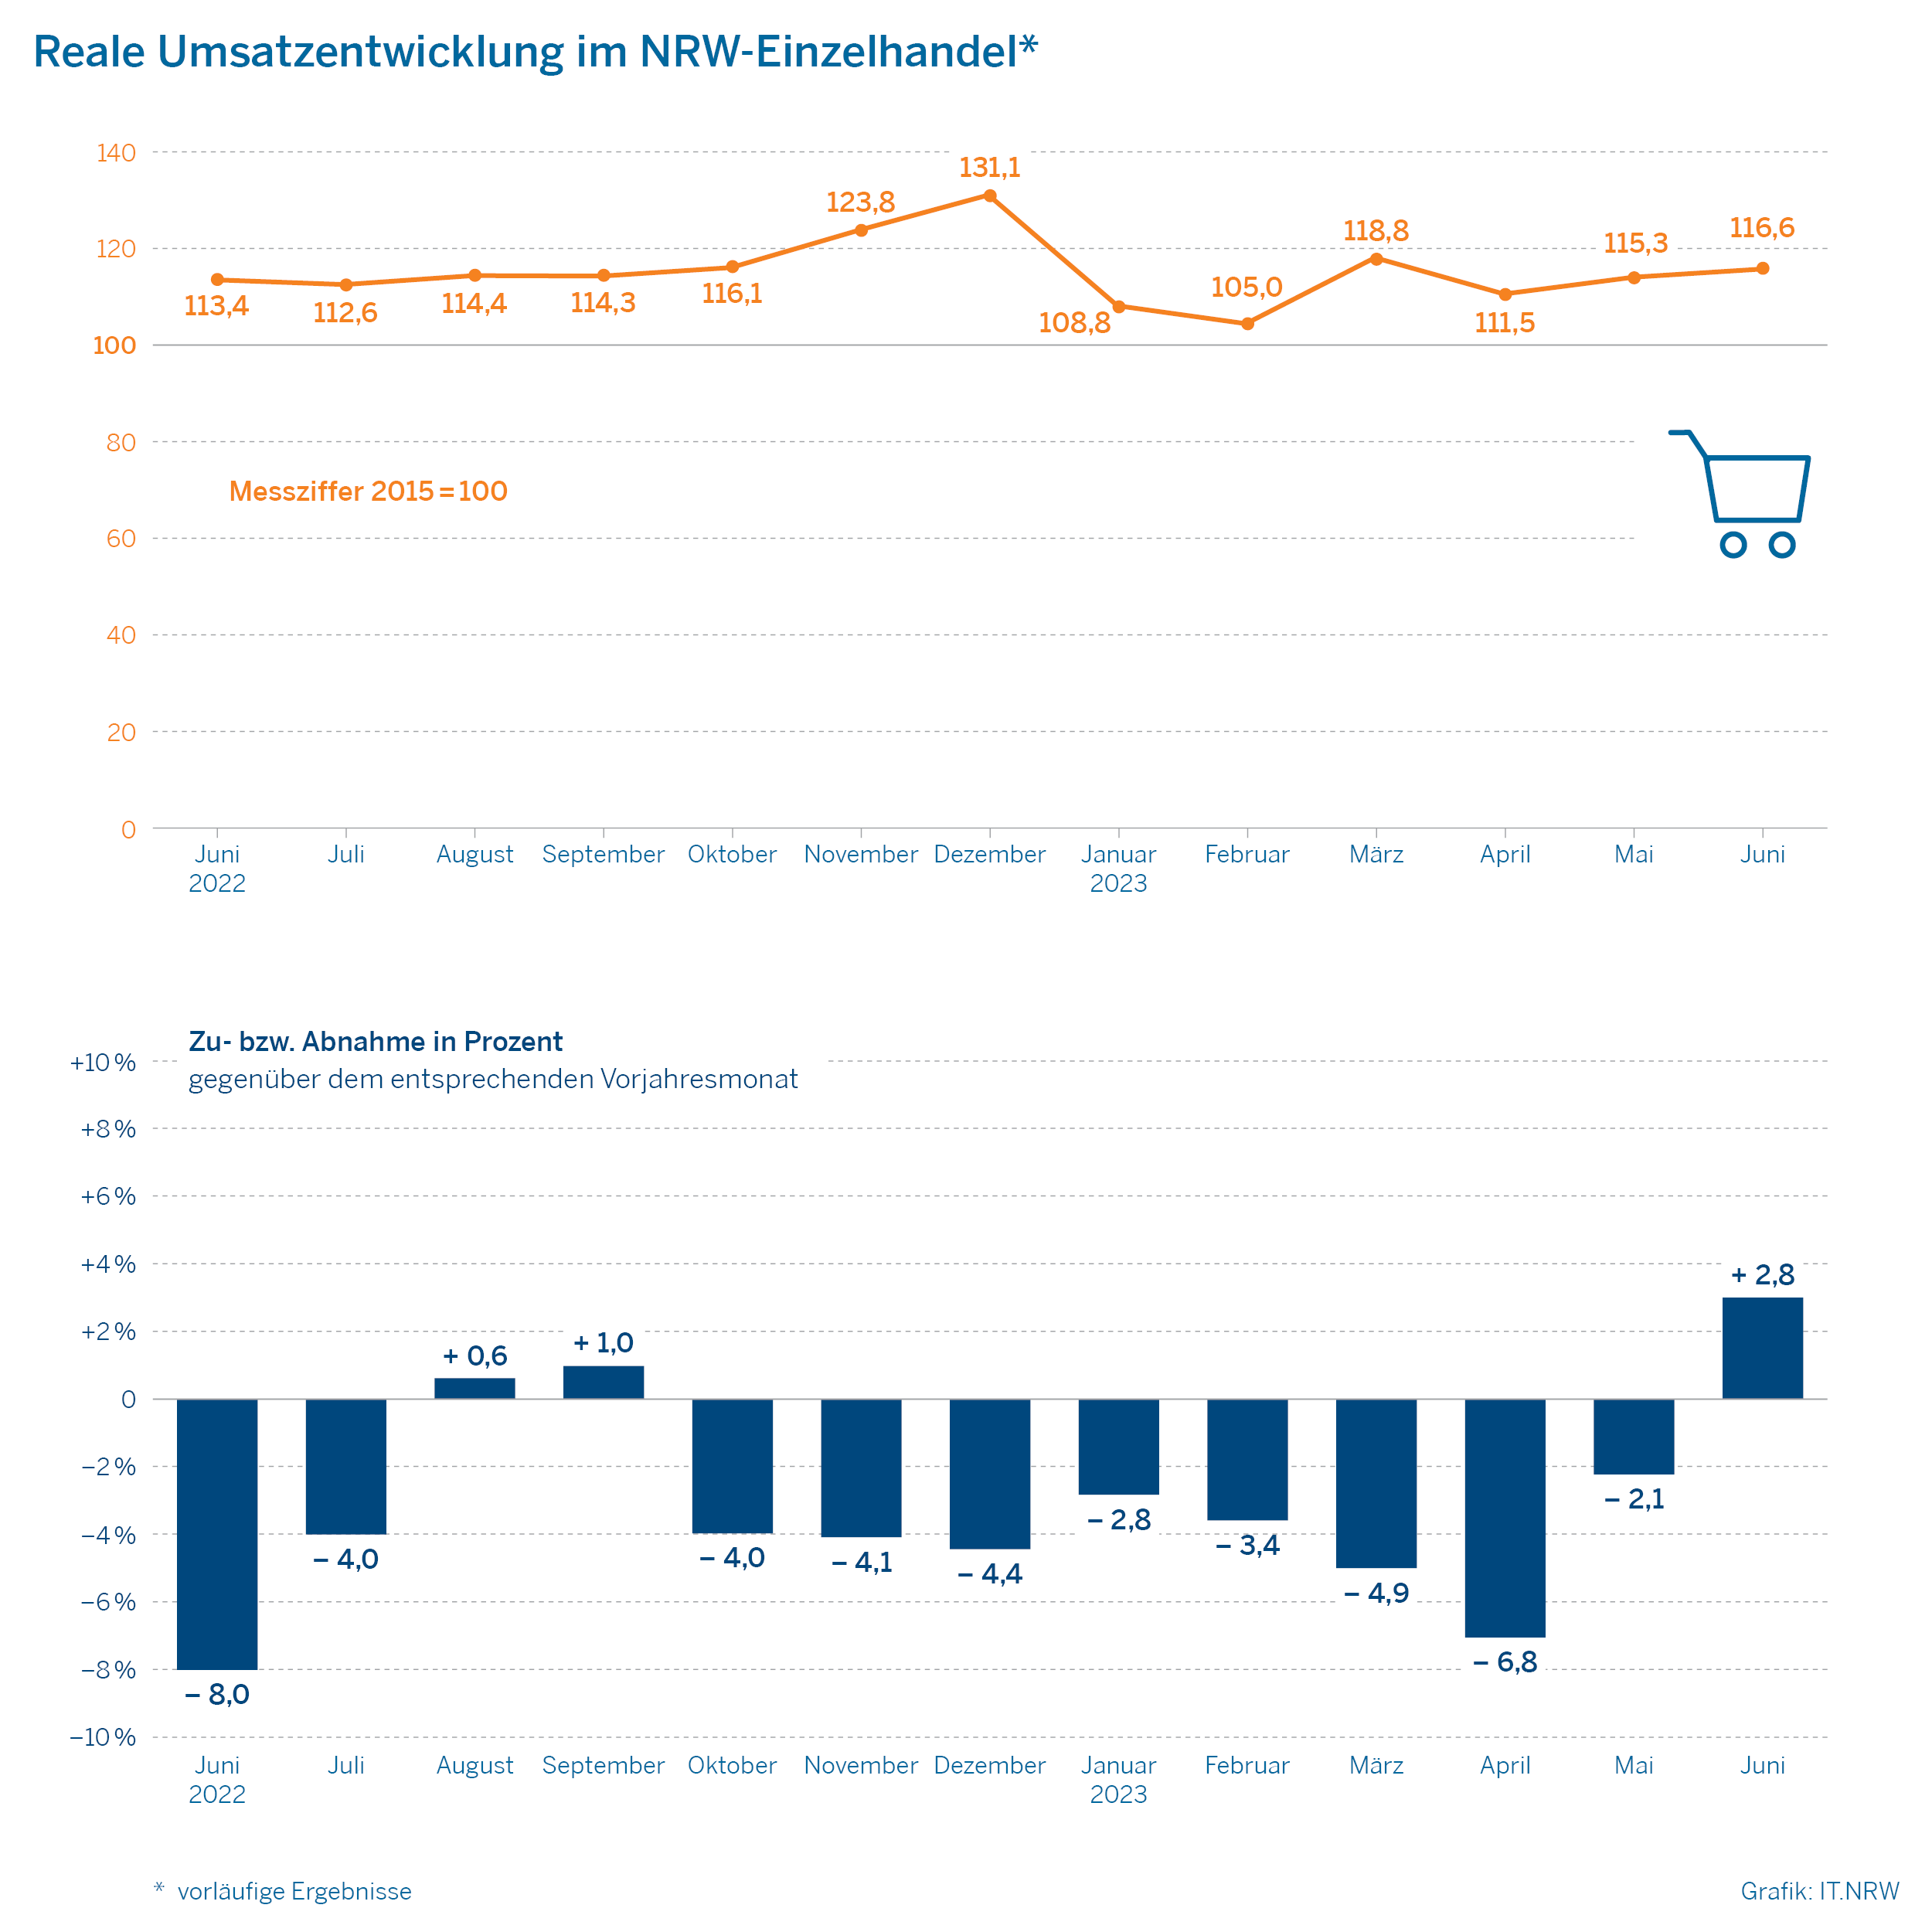 Reale Umsatzentwicklung im NRW-Einzelhandel